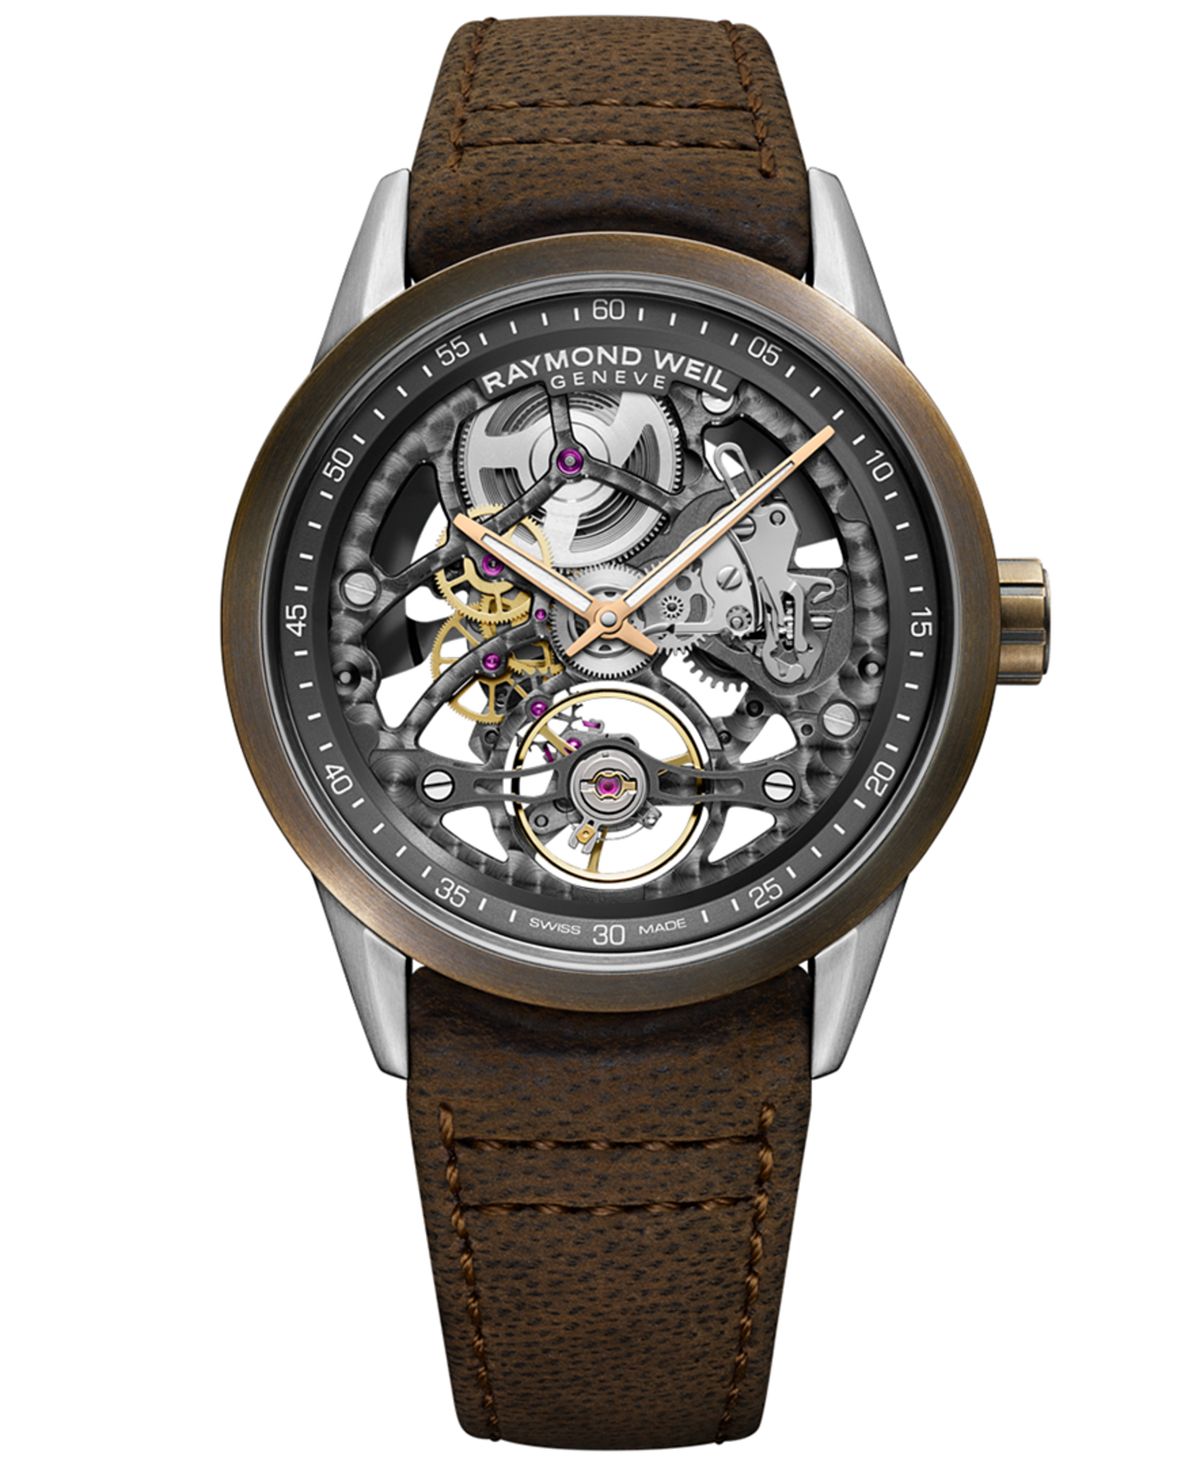 Мужские швейцарские автоматические часы Freelancer с коричневым кожаным ремешком, 42 мм Raymond Weil часы скелетон freelancer 42 мм raymond weil цвет gray